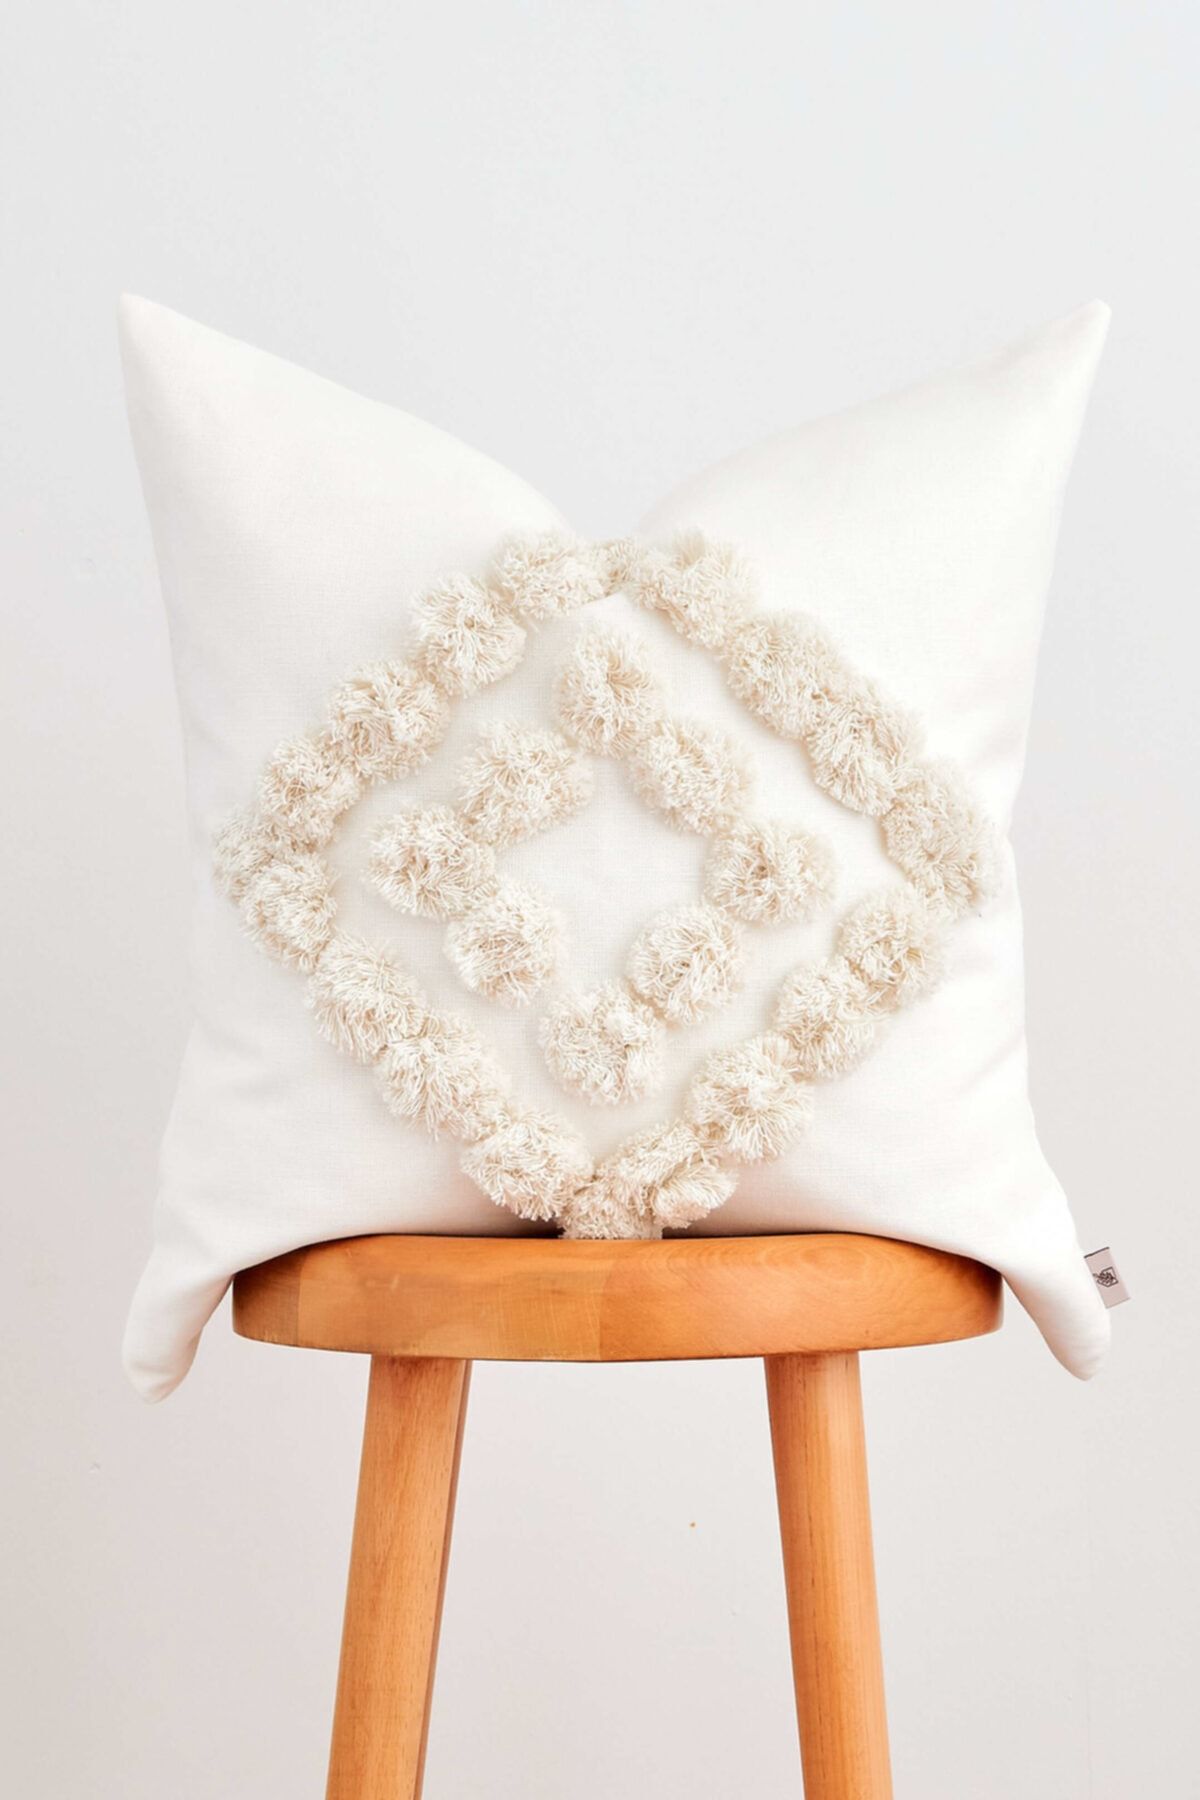 Cozy & Soft Pamuk Bohem Yüzeyi Ponponlu Kırık Beyaz Kırlent Kılıfı, Dekoratif Yastık Kılıfı, 50x50 Cm